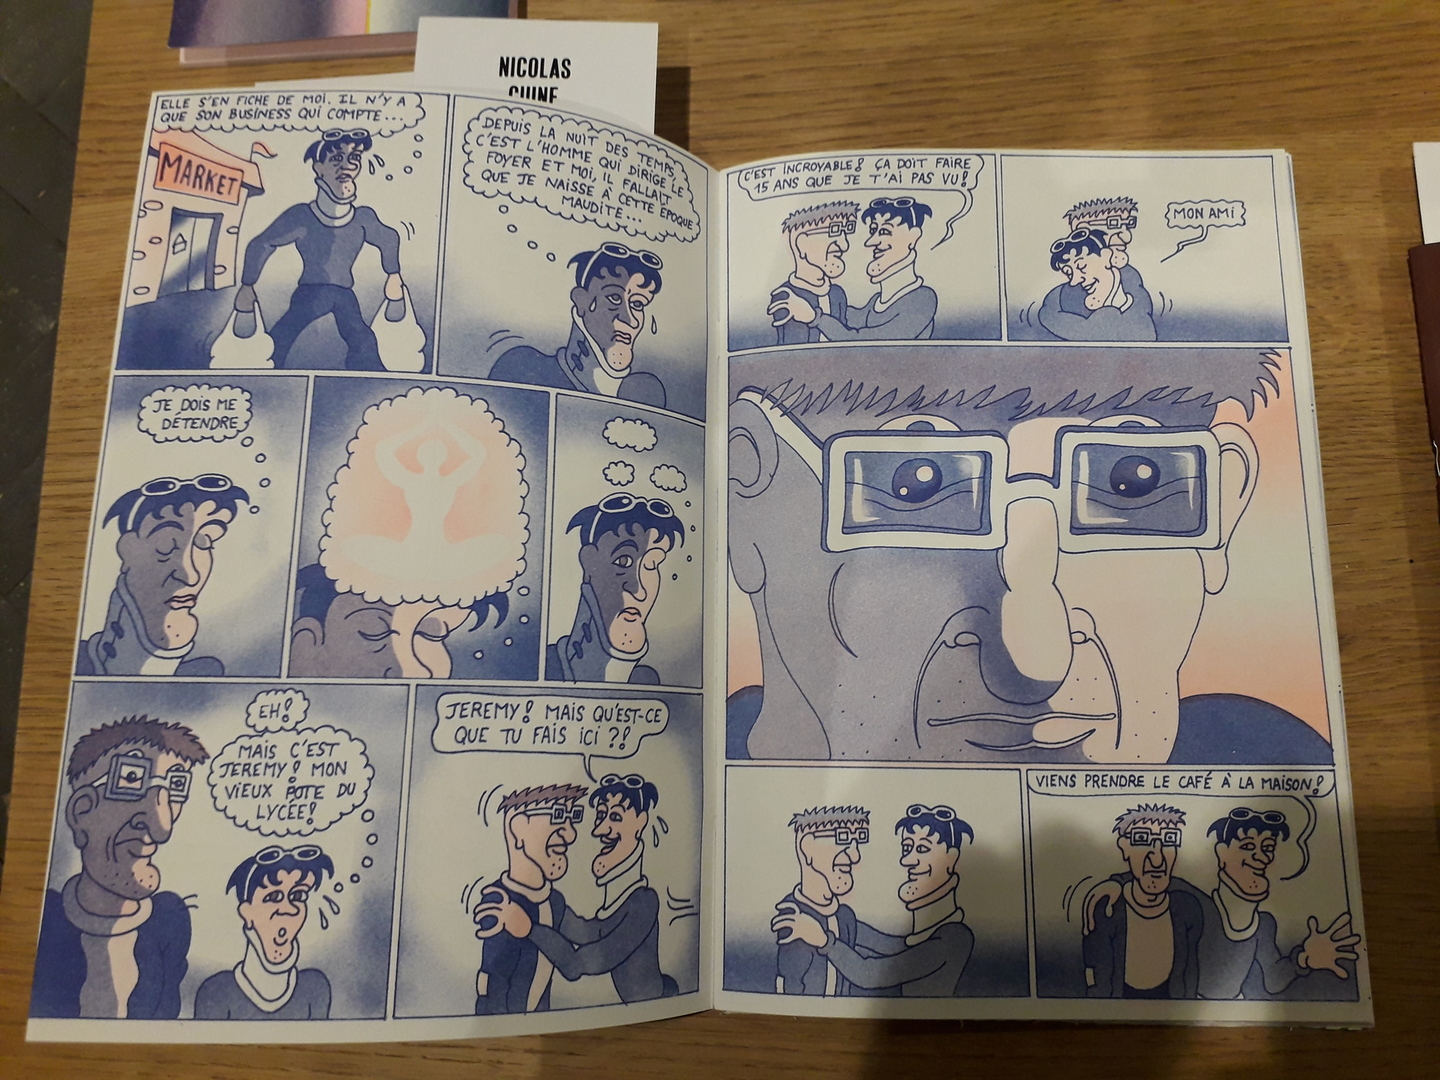 Image 11 : Bande-dessinnée en bichromie bleue et orange narrant les aventures d'un personnage à lunettes